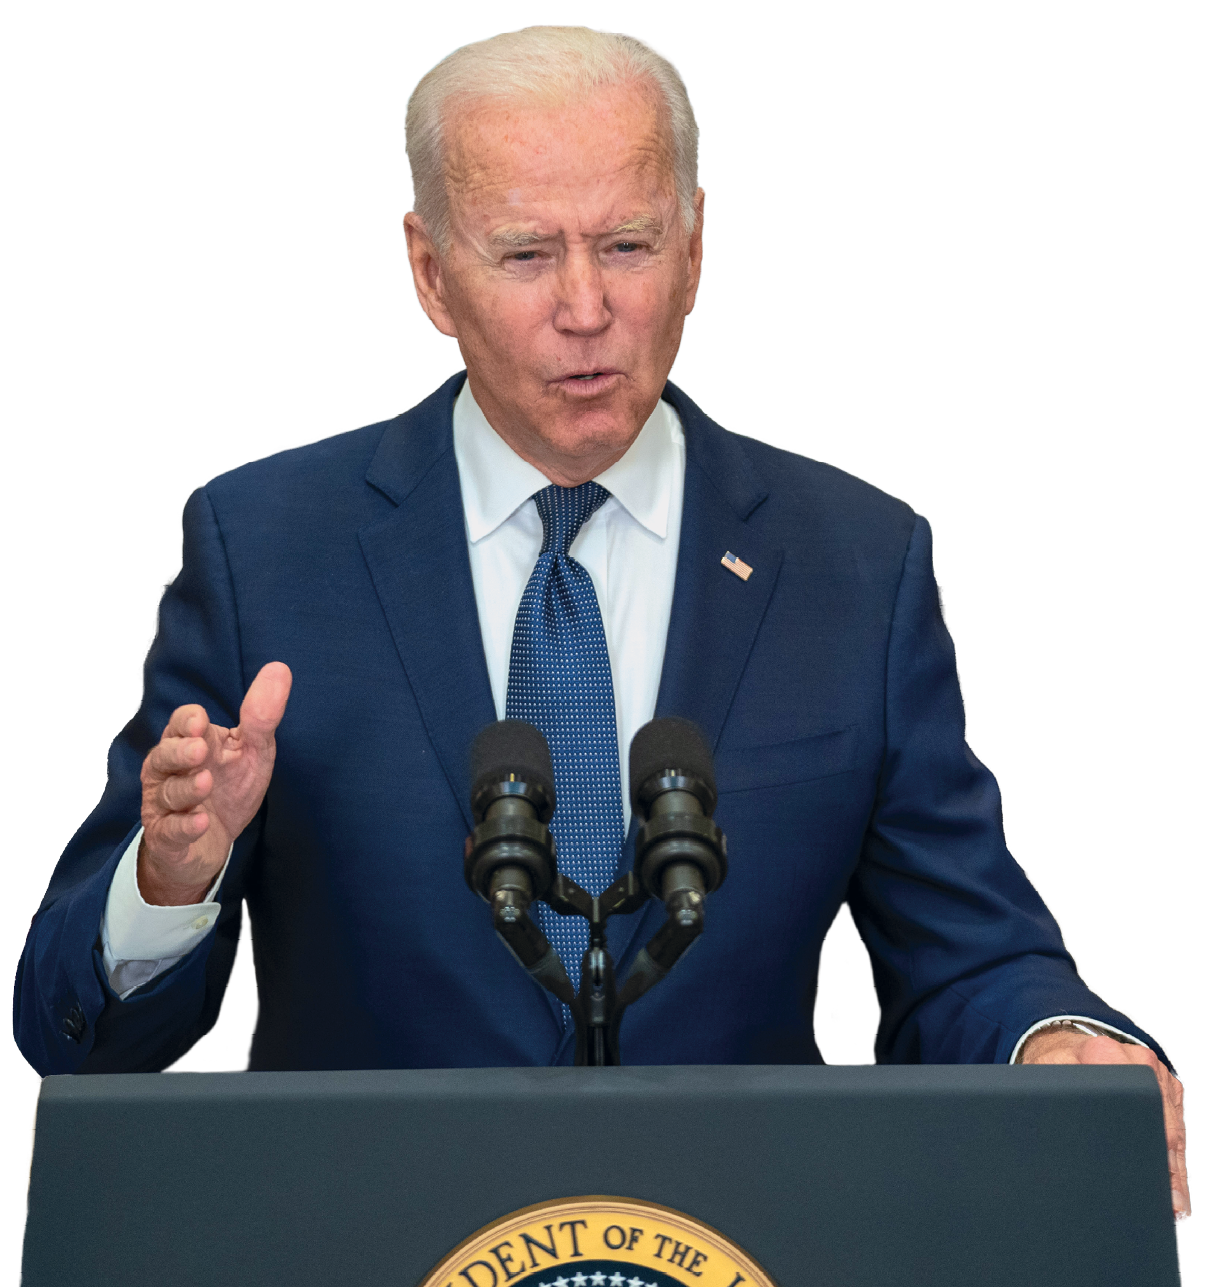 Fotografia. Homem de cabelo curto e branco, de terno azul, camisa branca e gravata em azul, discursa diante de um púlpito azul escuro com dois microfones em preto.